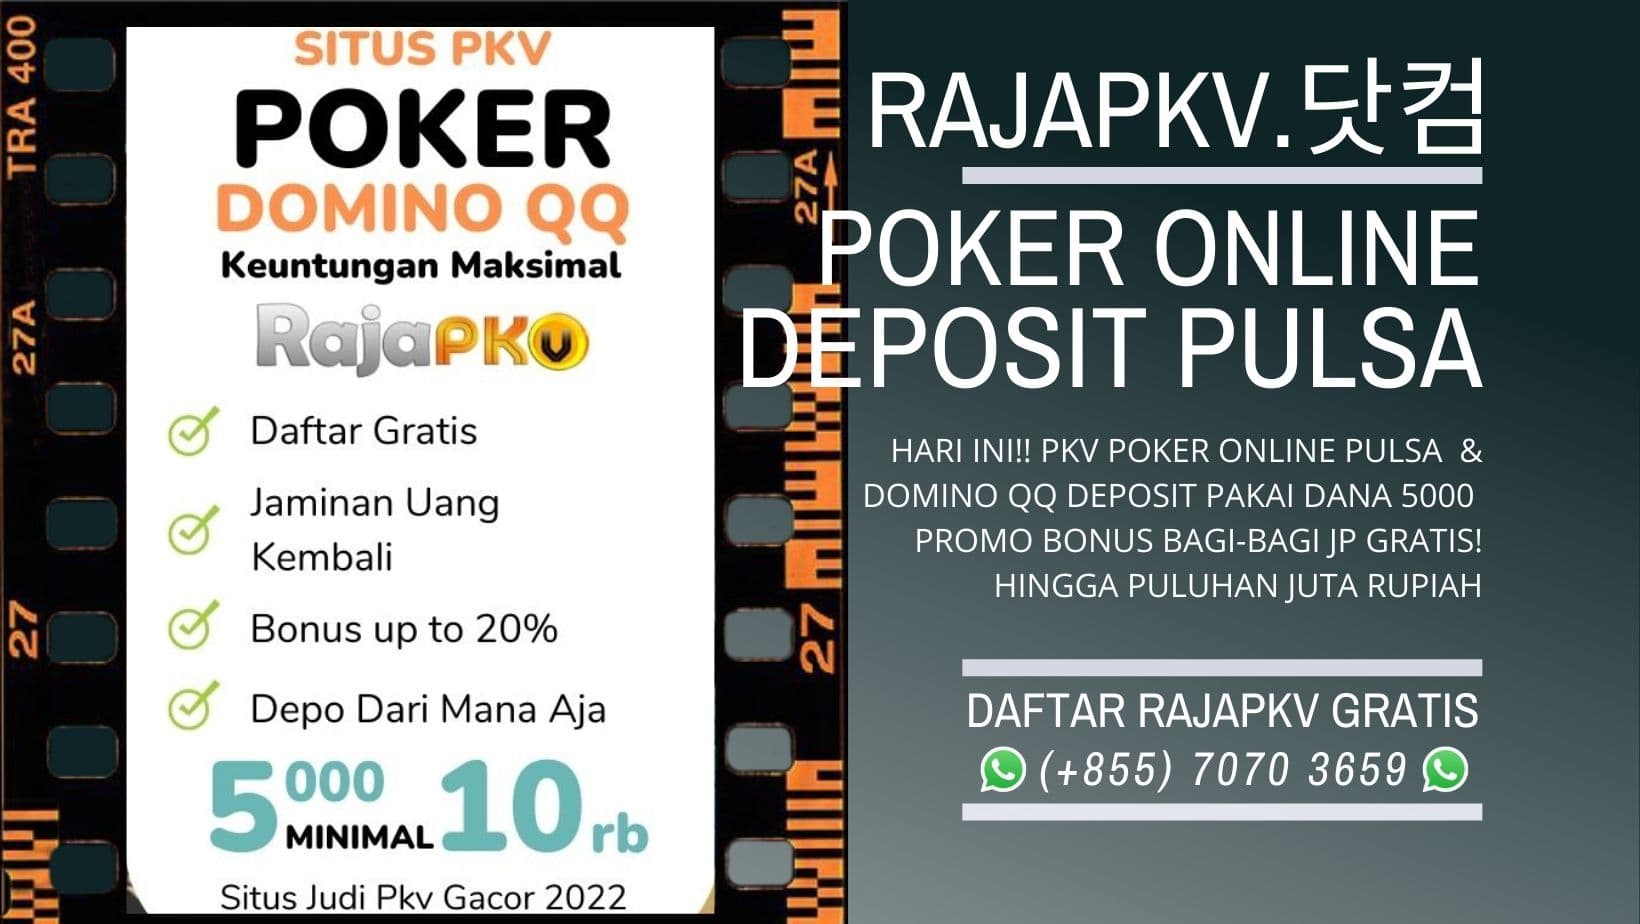 raja-pkv-poker-online-deposit-pulsa.jpeg?70a11f66dfac292fd49b7987a1067a7f